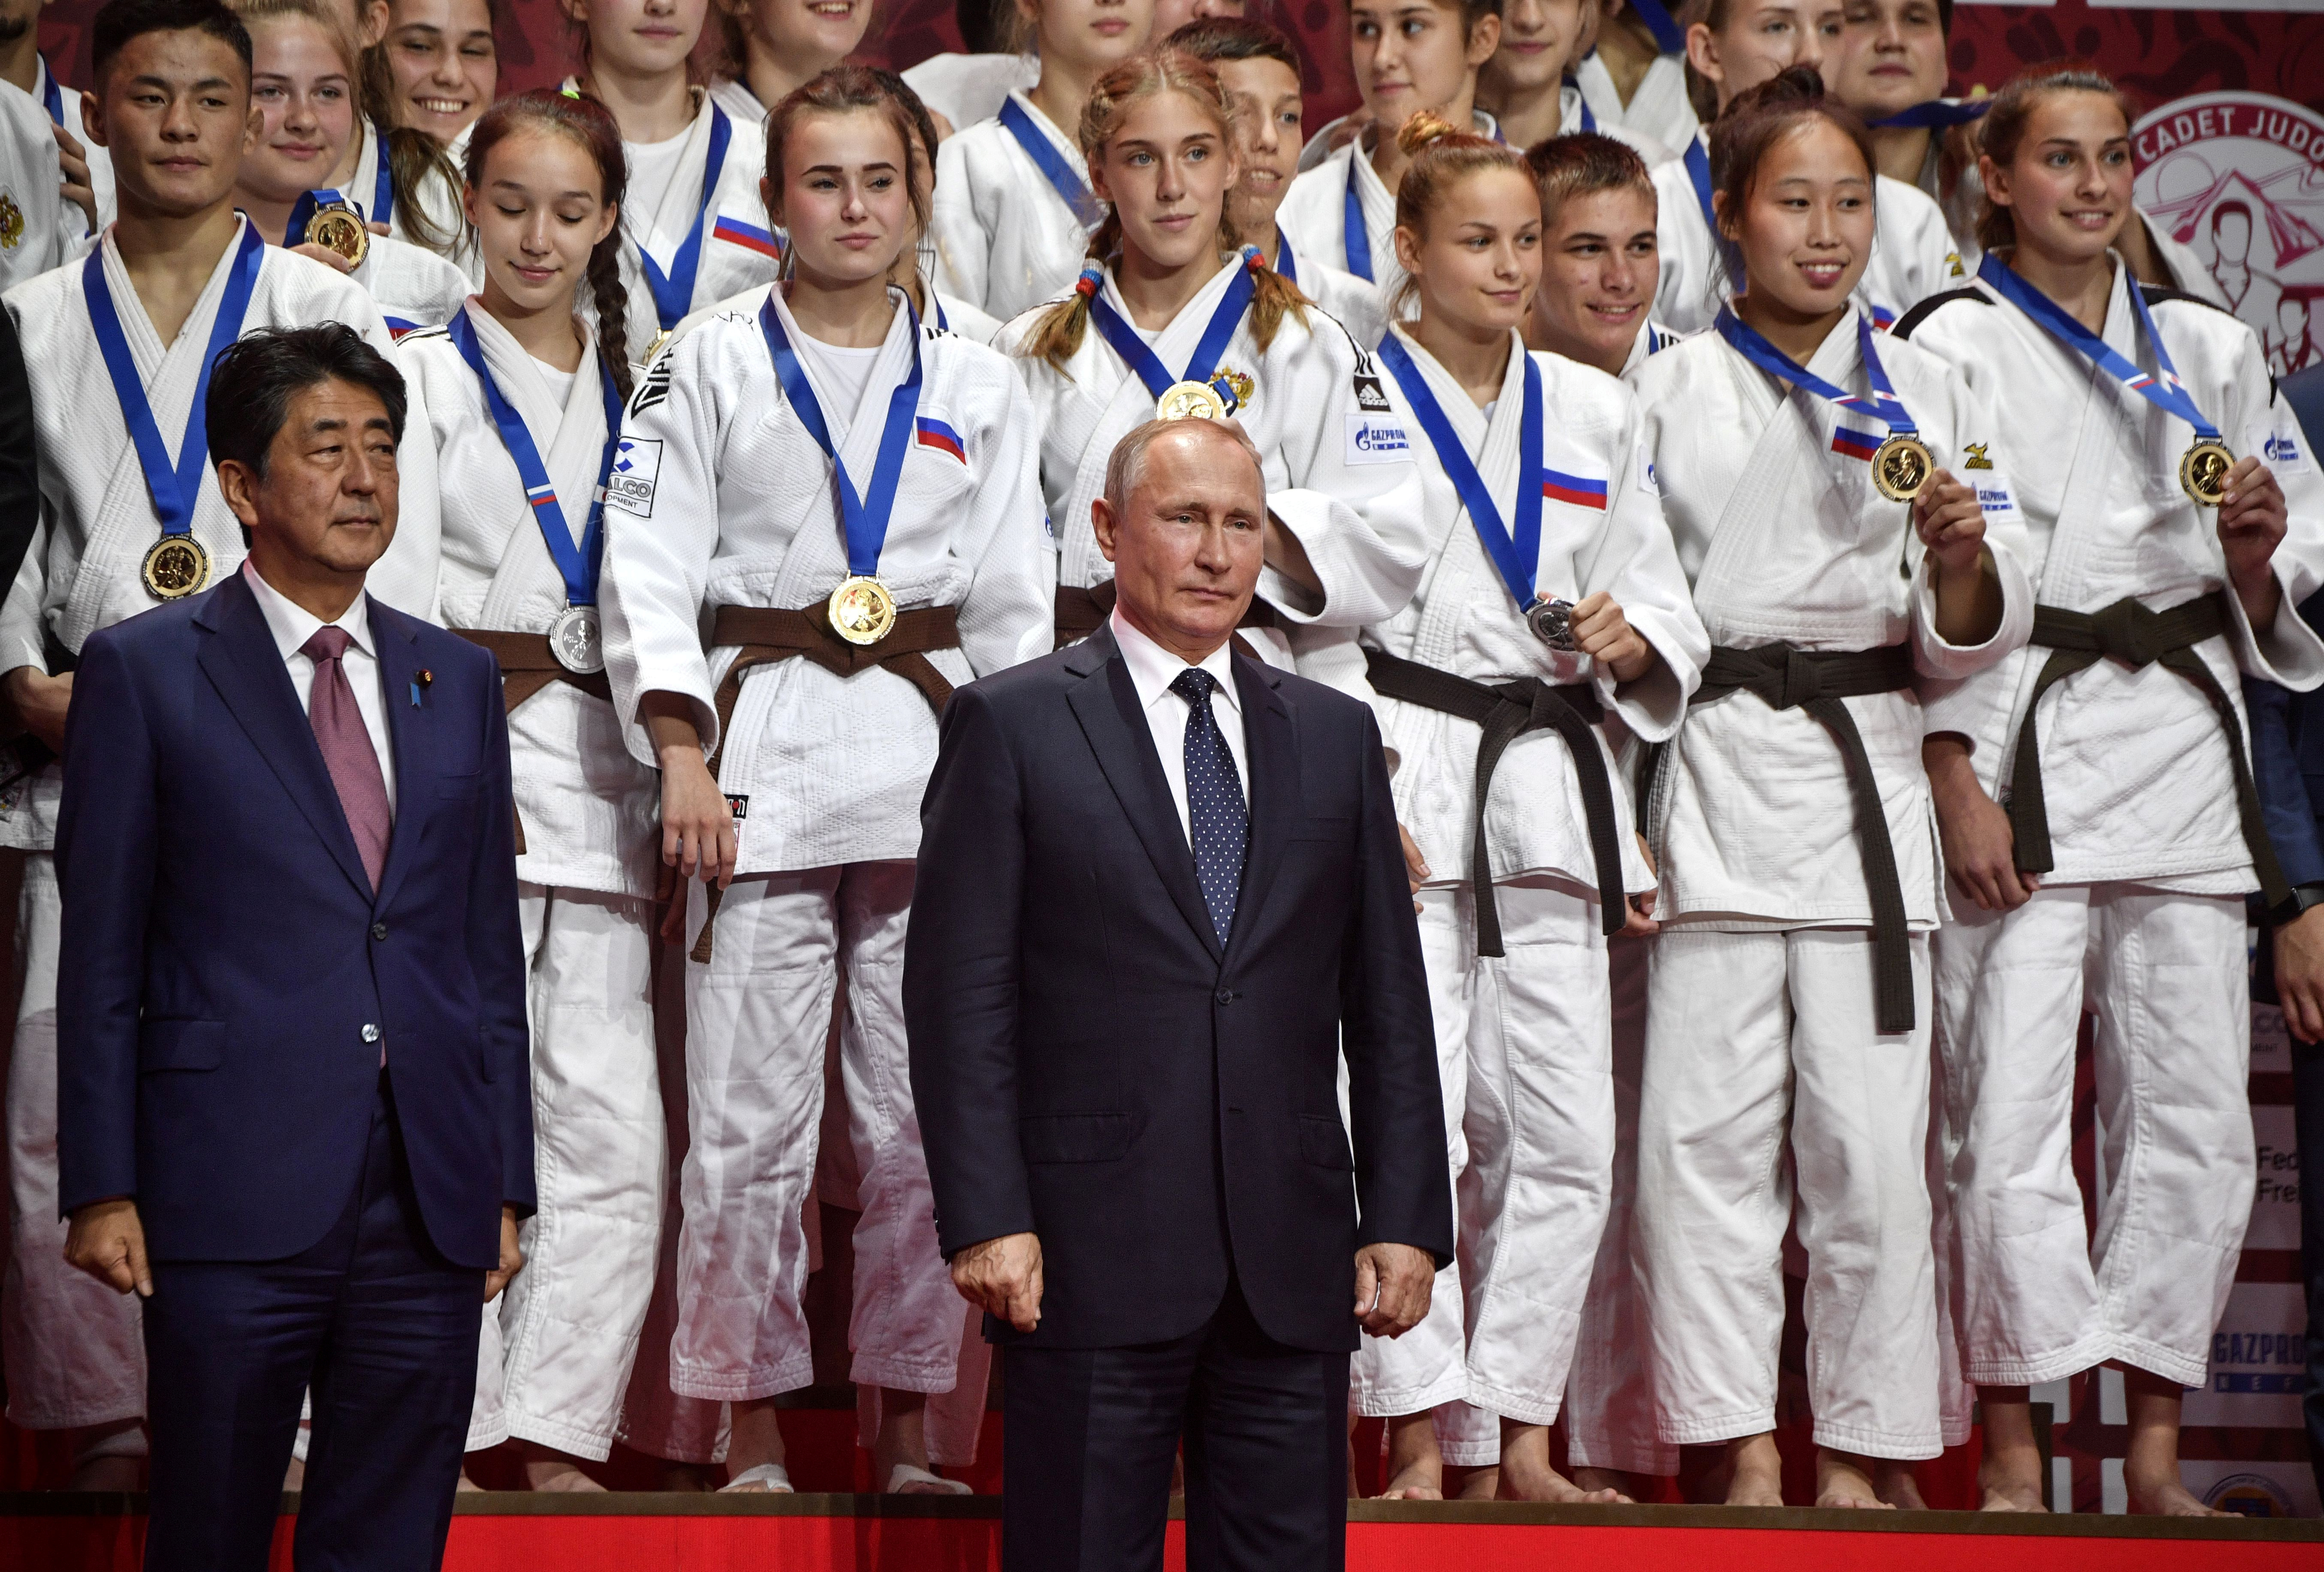 “Όχι” από Πούτιν στην συνθήκη ειρήνης μεταξύ Ιαπωνίας και Ρωσίας – Παραμένουν σε… πόλεμο οι δύο χώρες